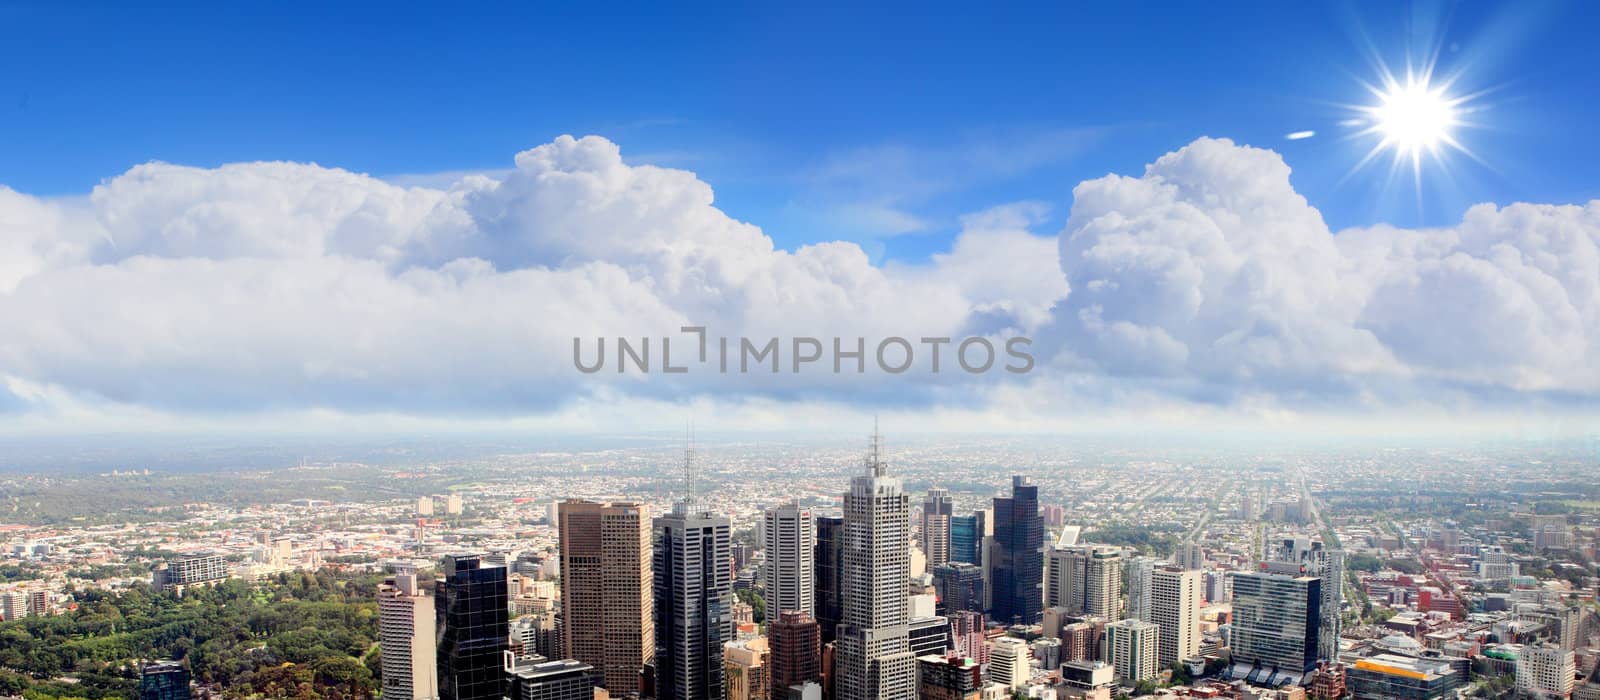 City skyline illustration/ modern city under blue sky